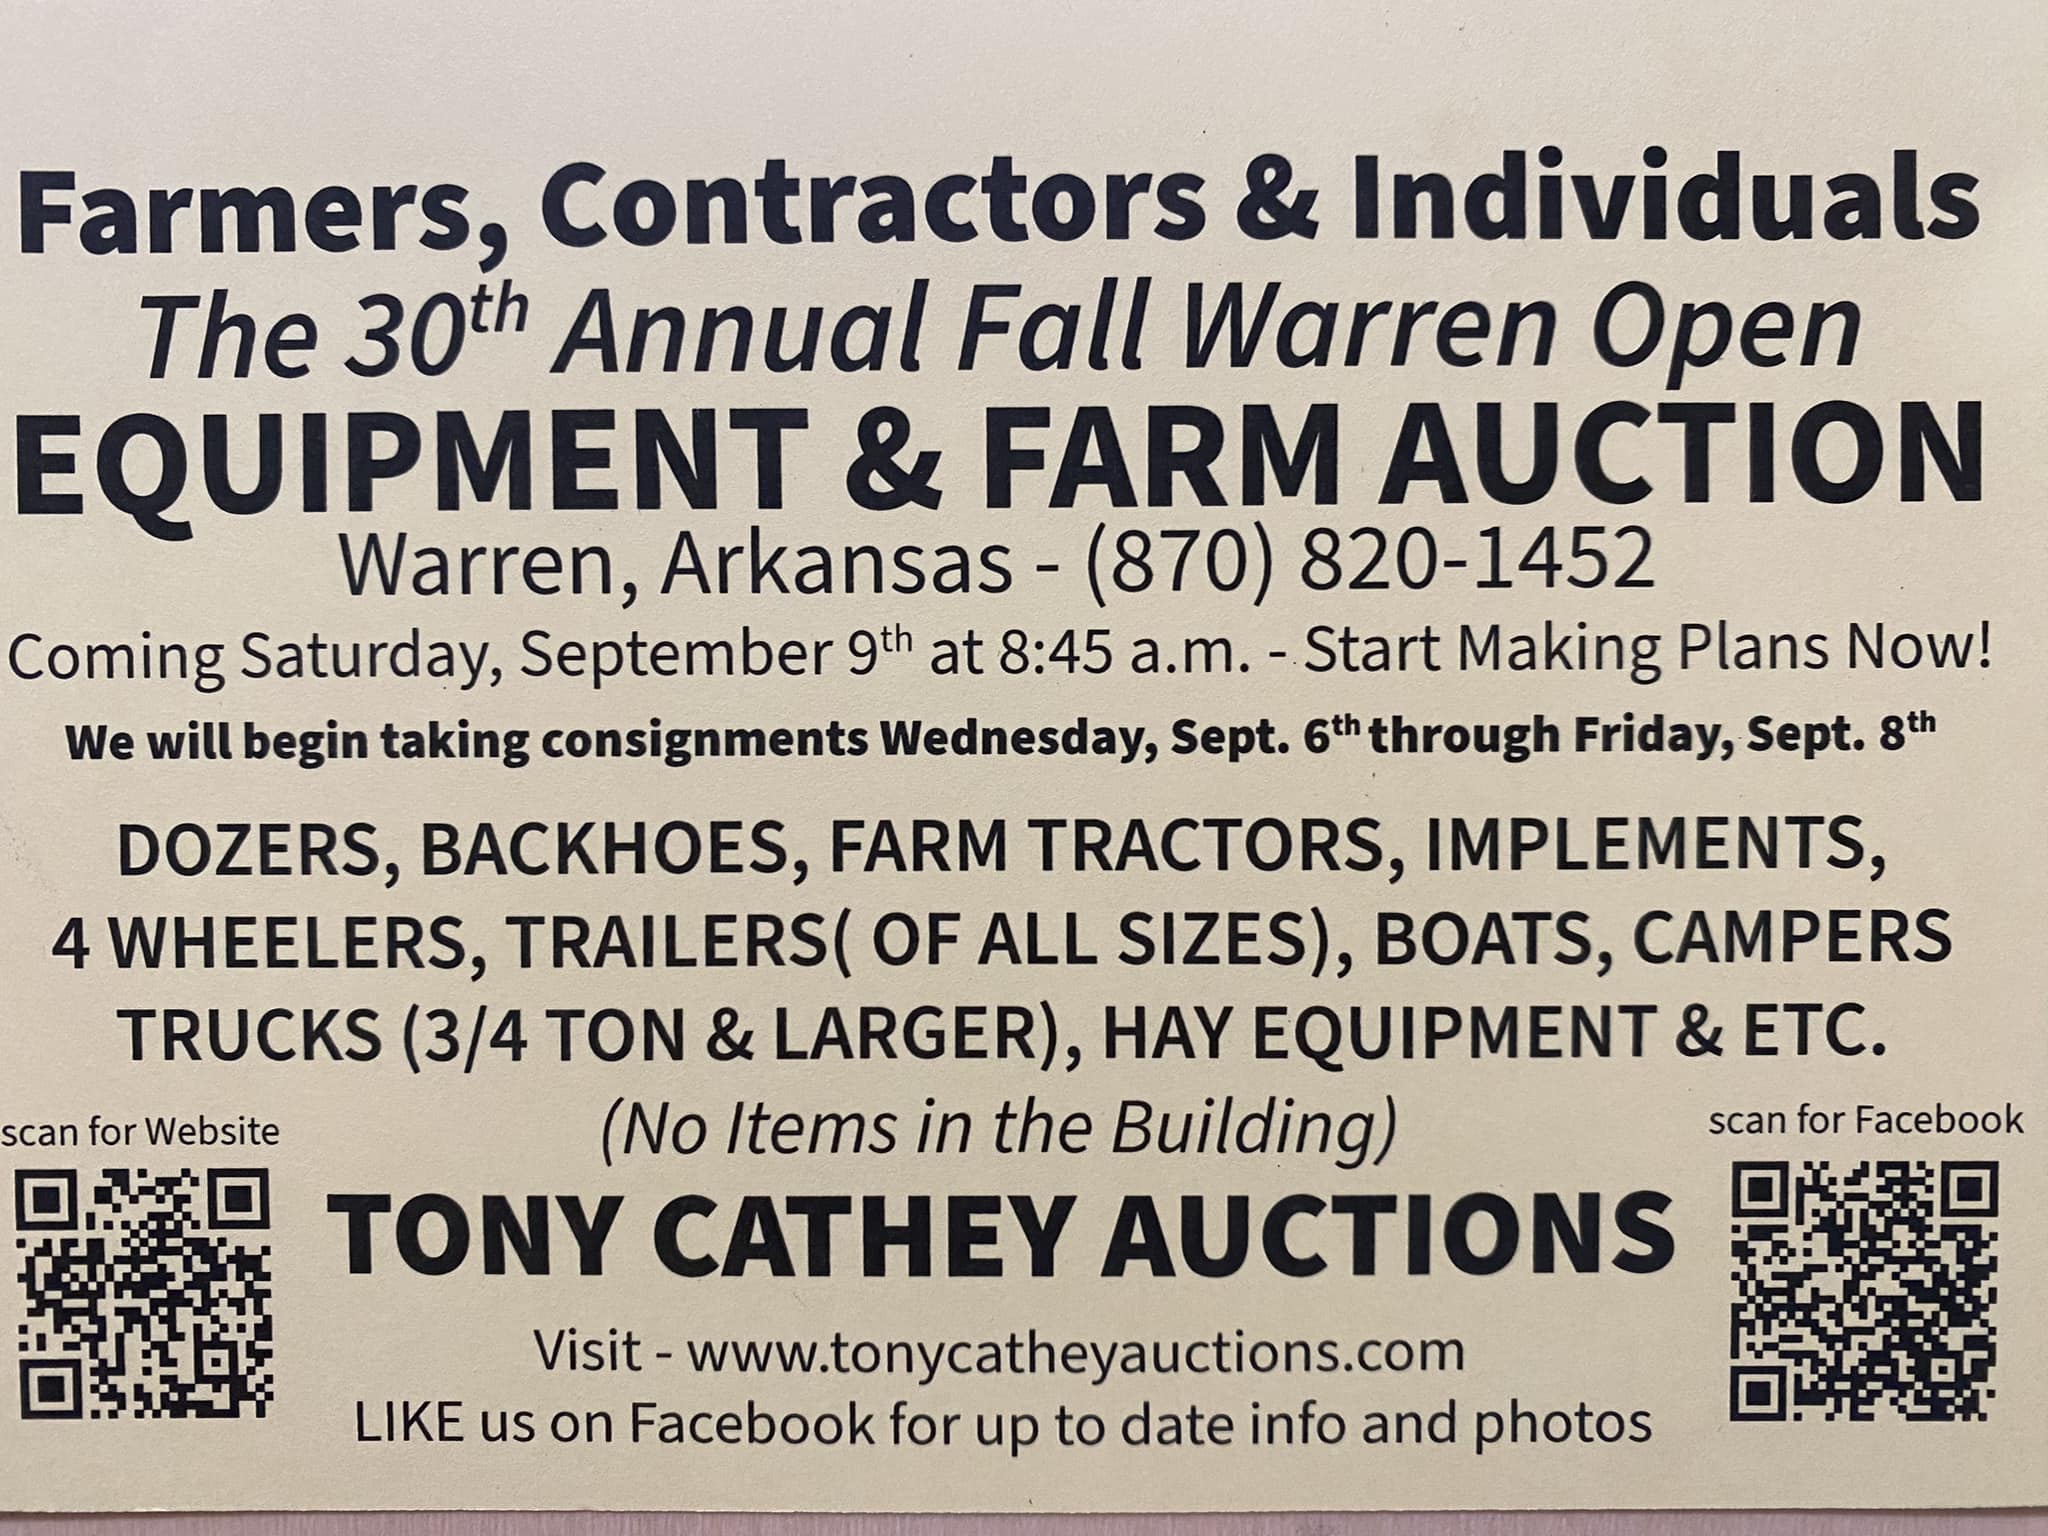 Tony Cathey Auctions